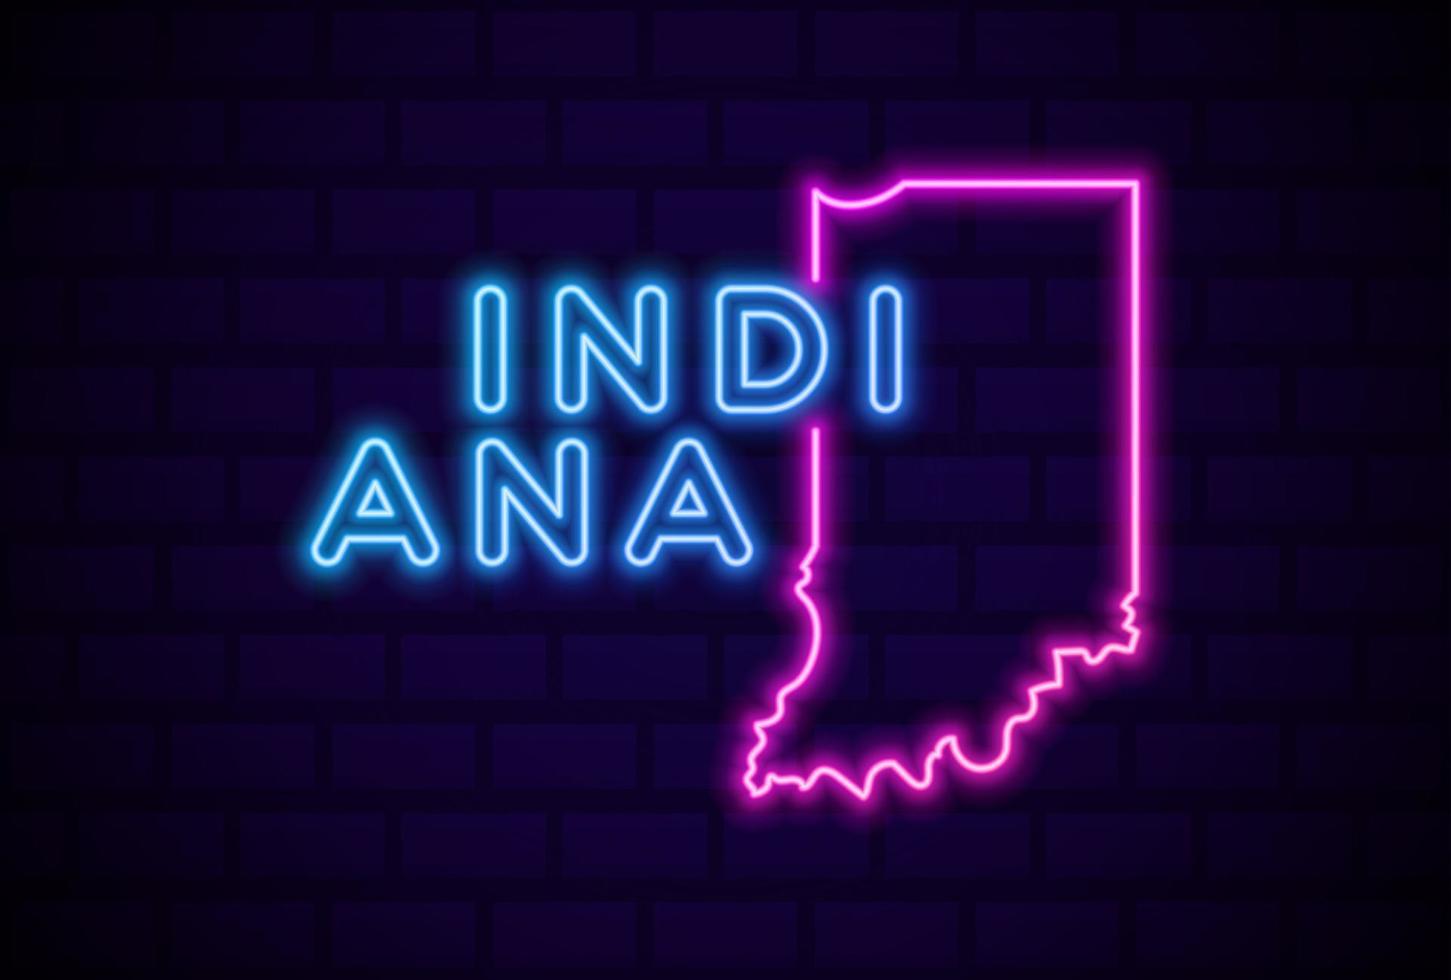 Indiana VS staat gloeiende neon lamp teken realistische vector illustratie blauwe bakstenen muur gloed